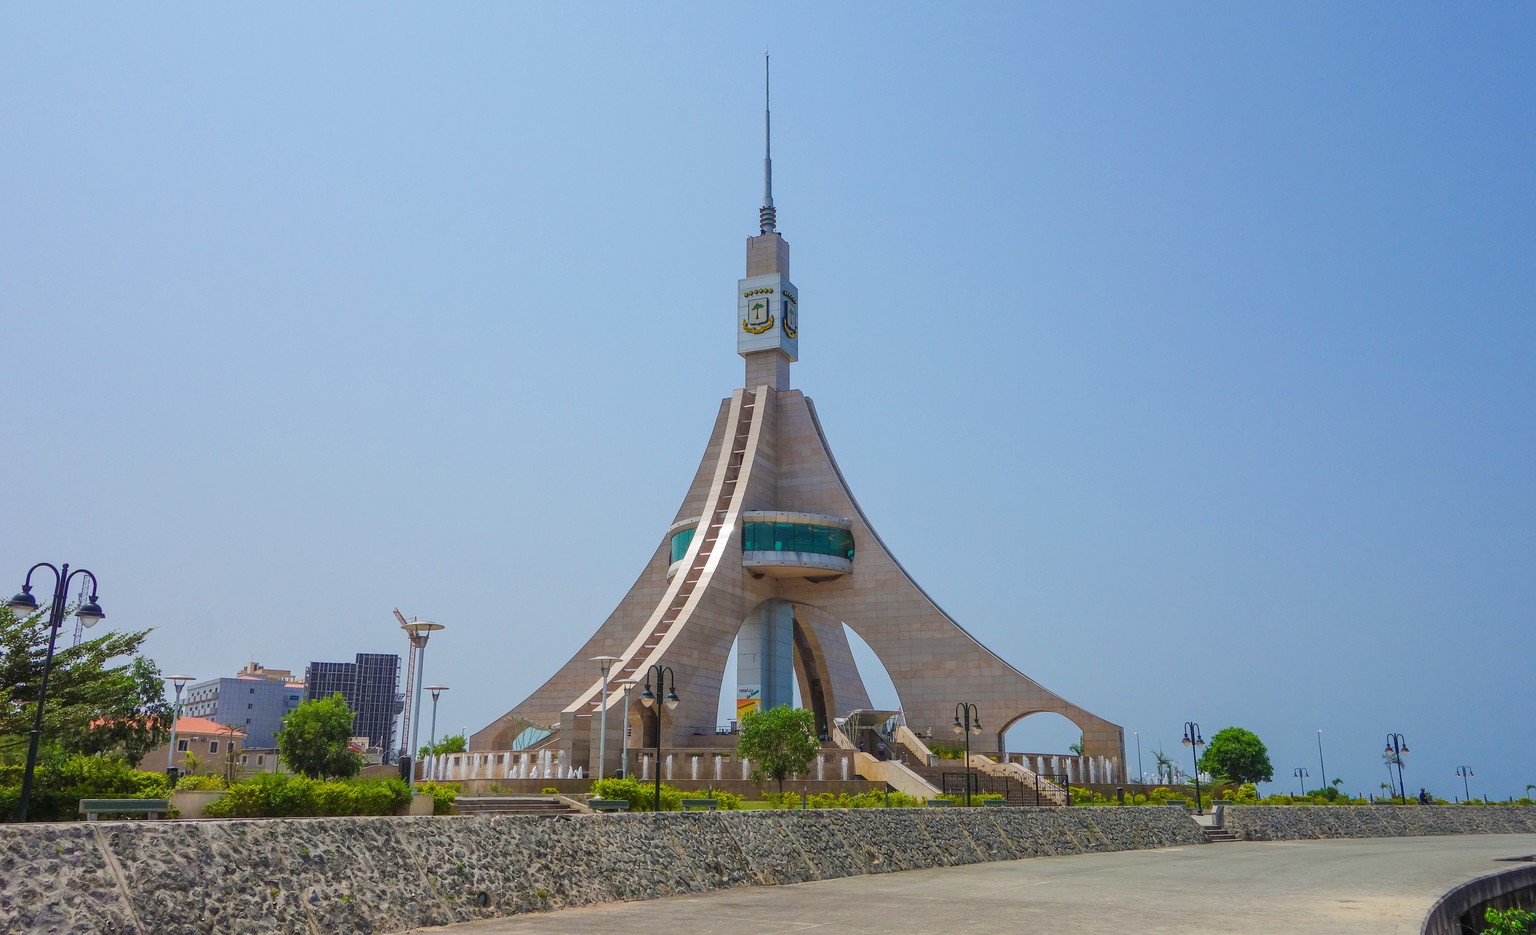 Äquatorialguinea verblüfft praktisch an jeder Ecke: Hier der Turm der Freiheit in der Küstenstadt Bata.